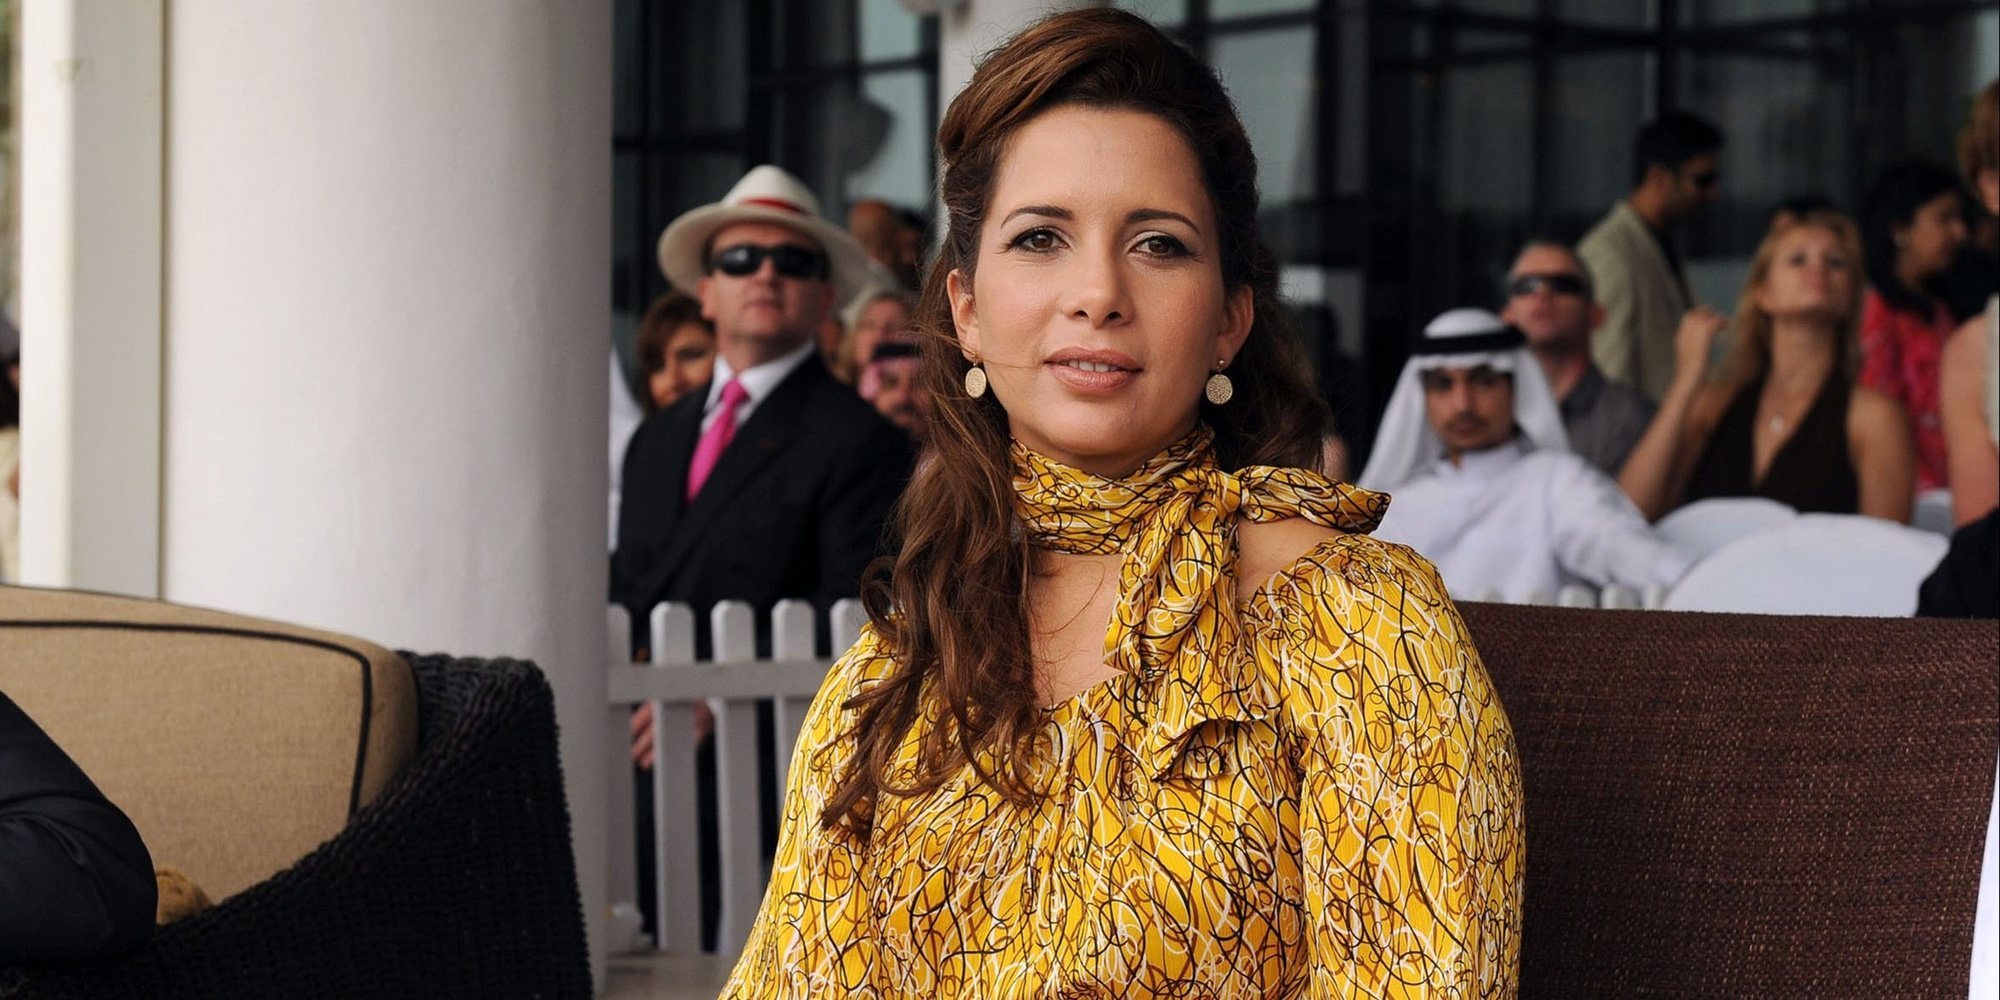 La Princesa Haya de Jordania huye de su marido junto a sus dos hijos y 40 millones de dólares